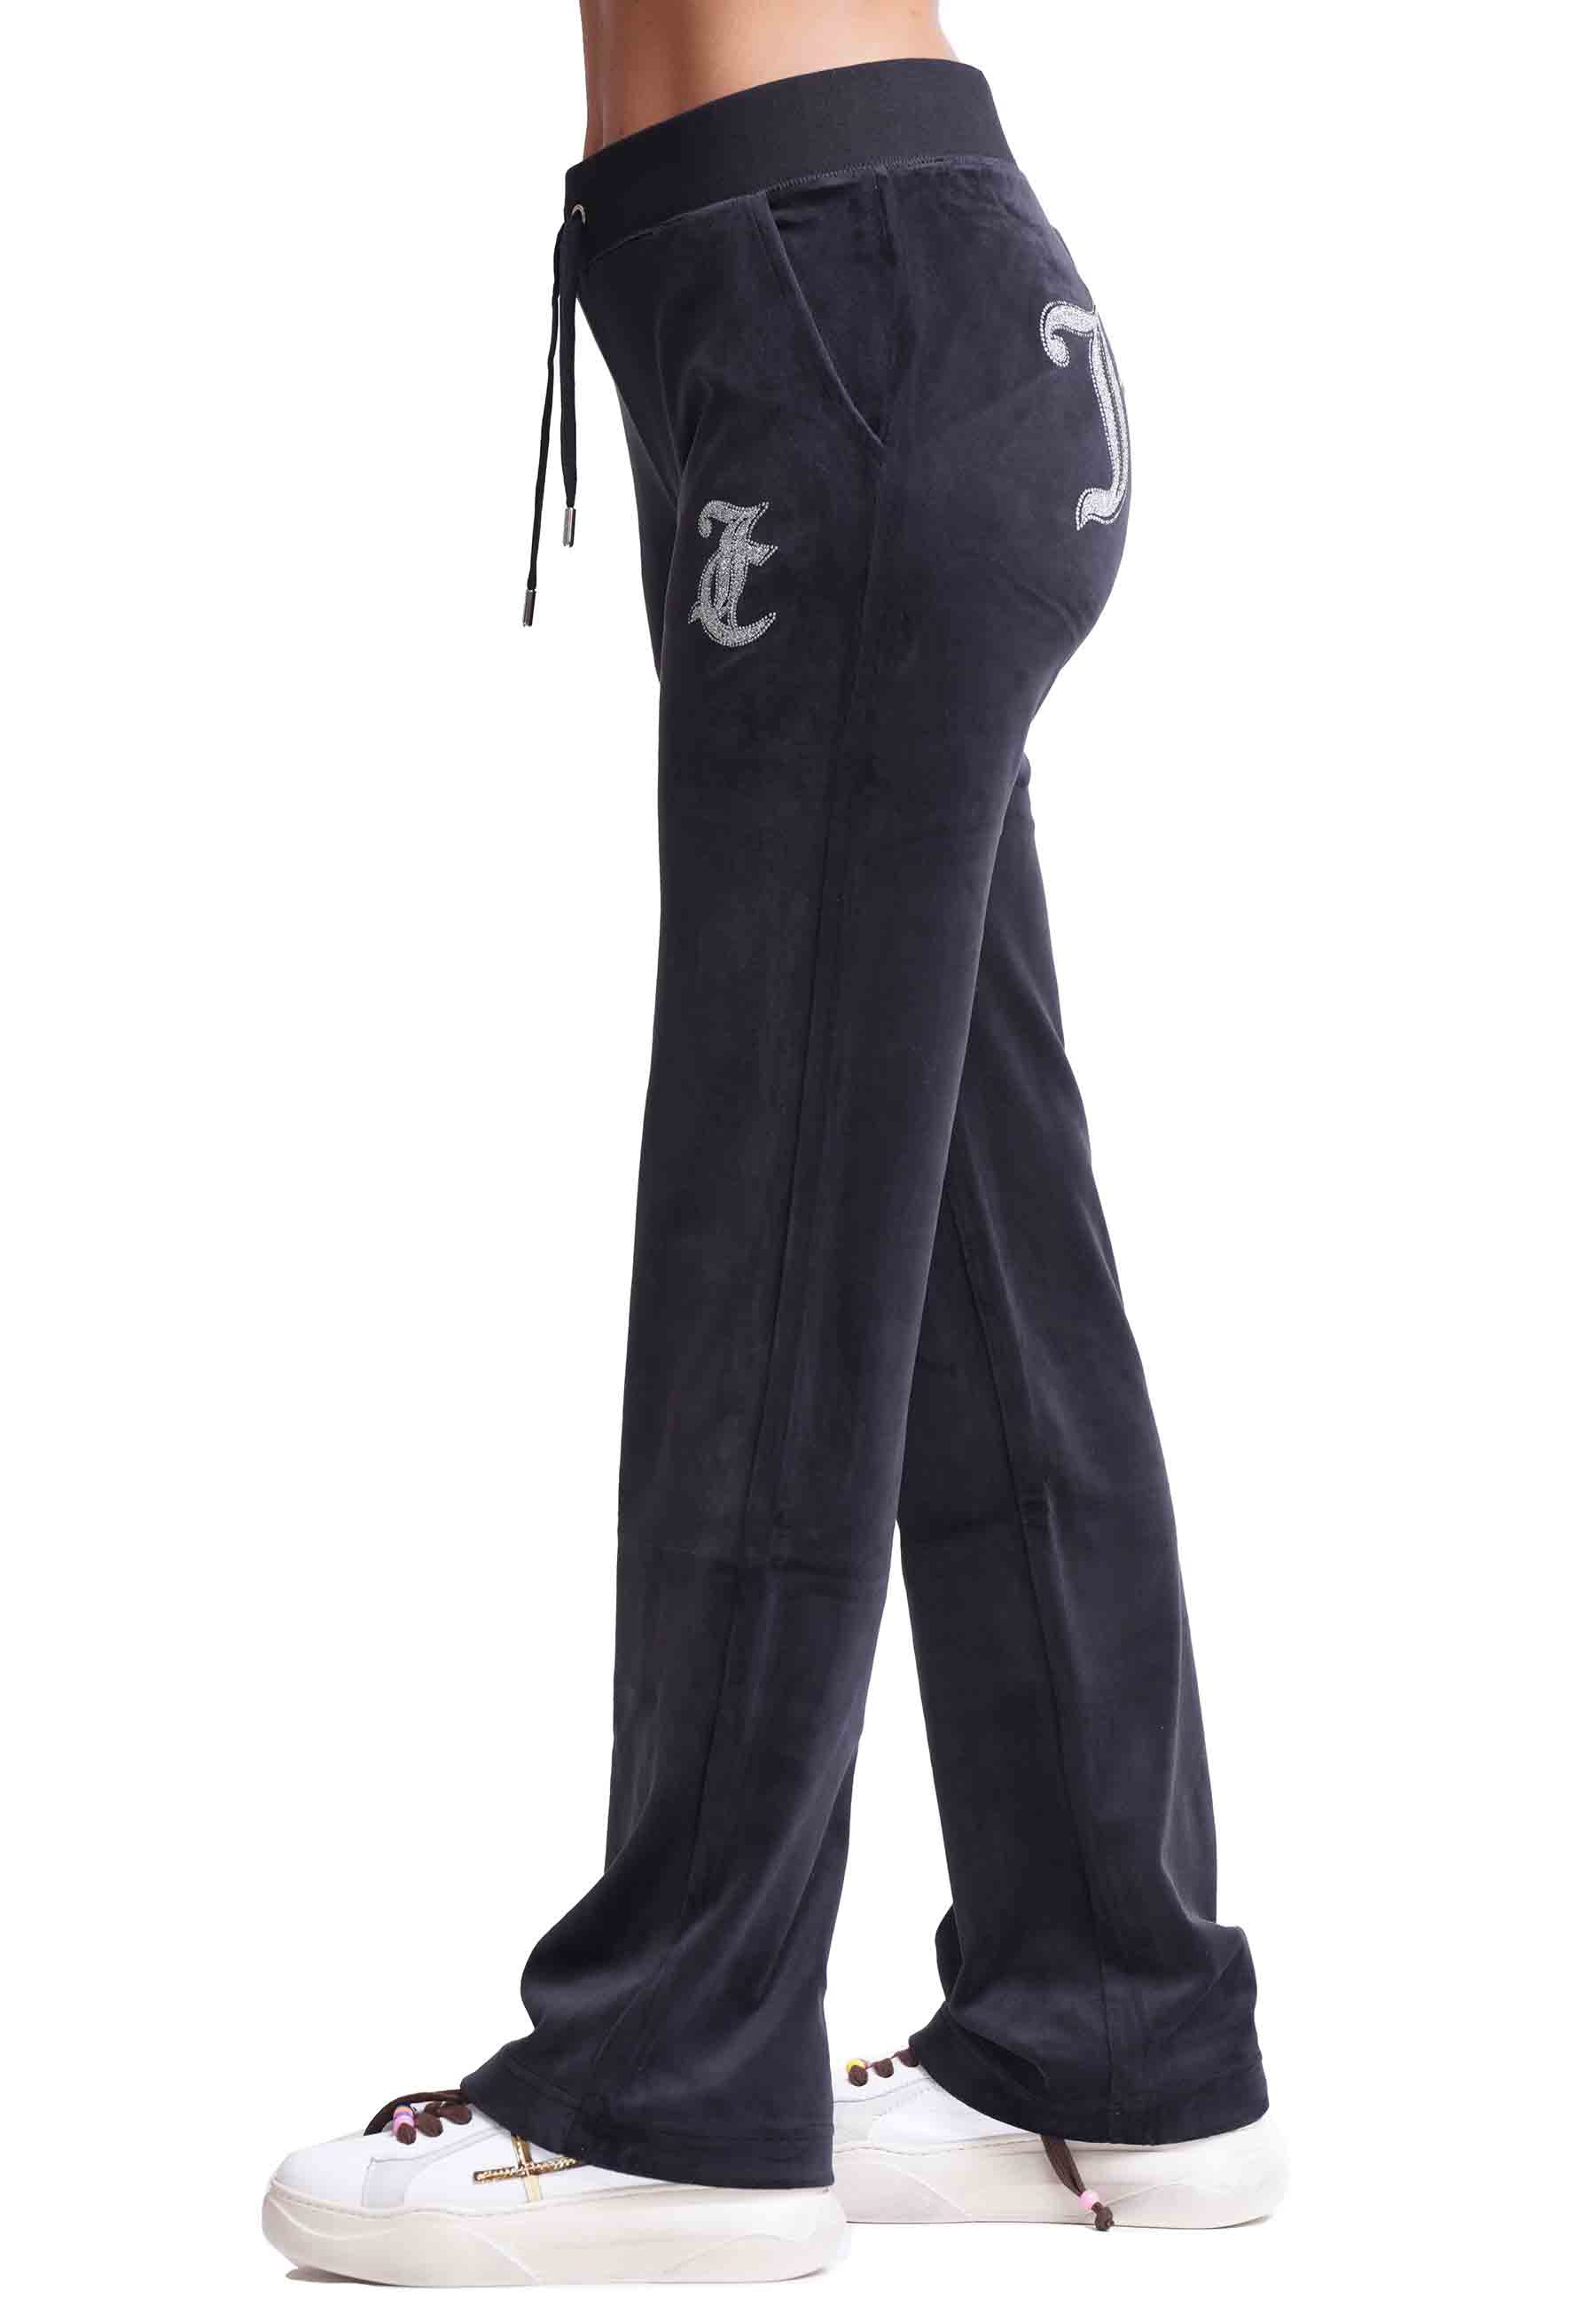 Pantaloni donna Diamond in velluto nero con strass